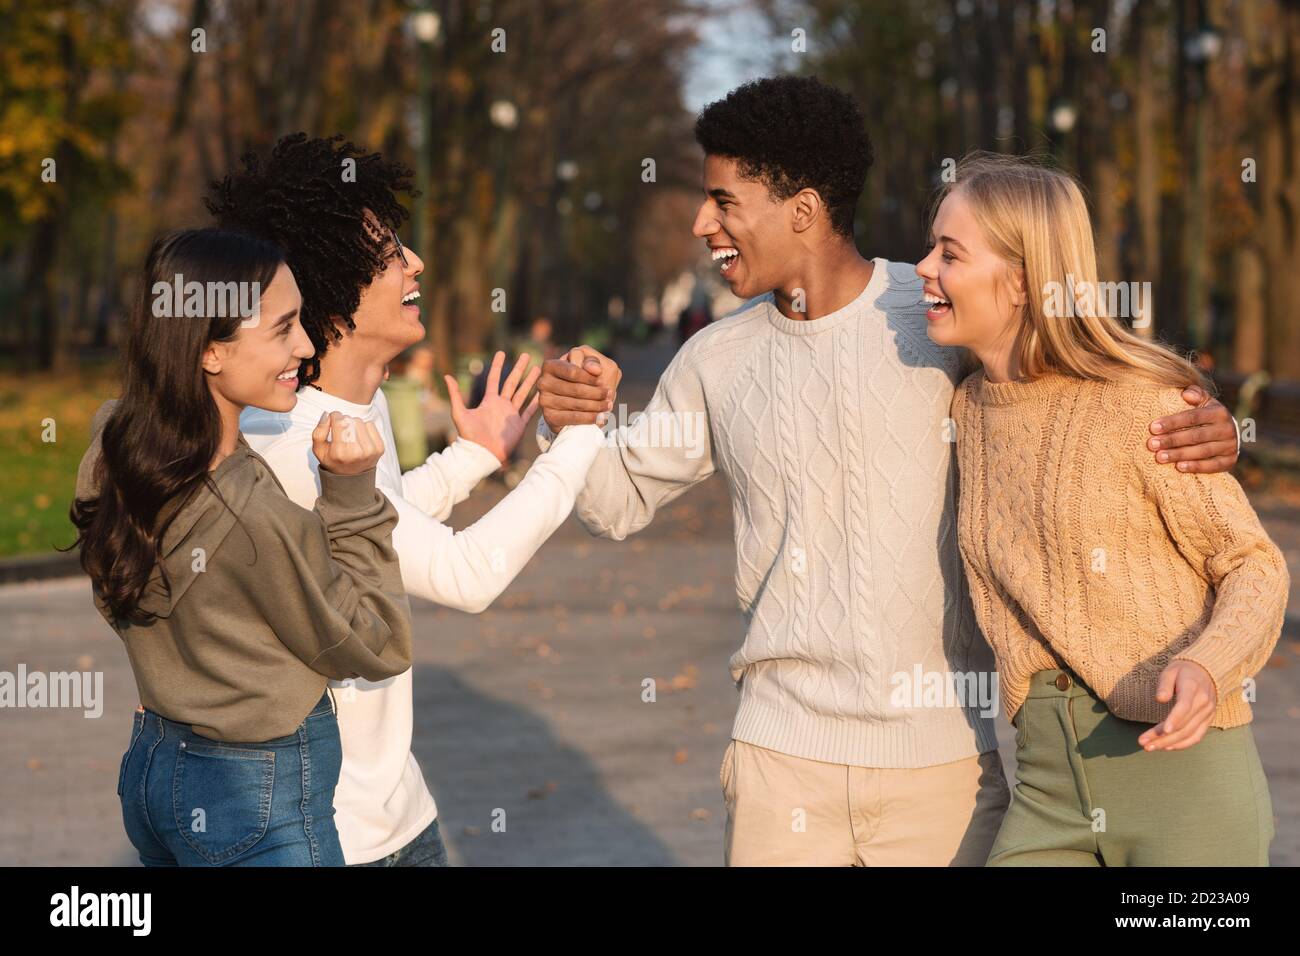 Un couple d'adolescents émotif se saluant les uns les autres dans le parc public Banque D'Images